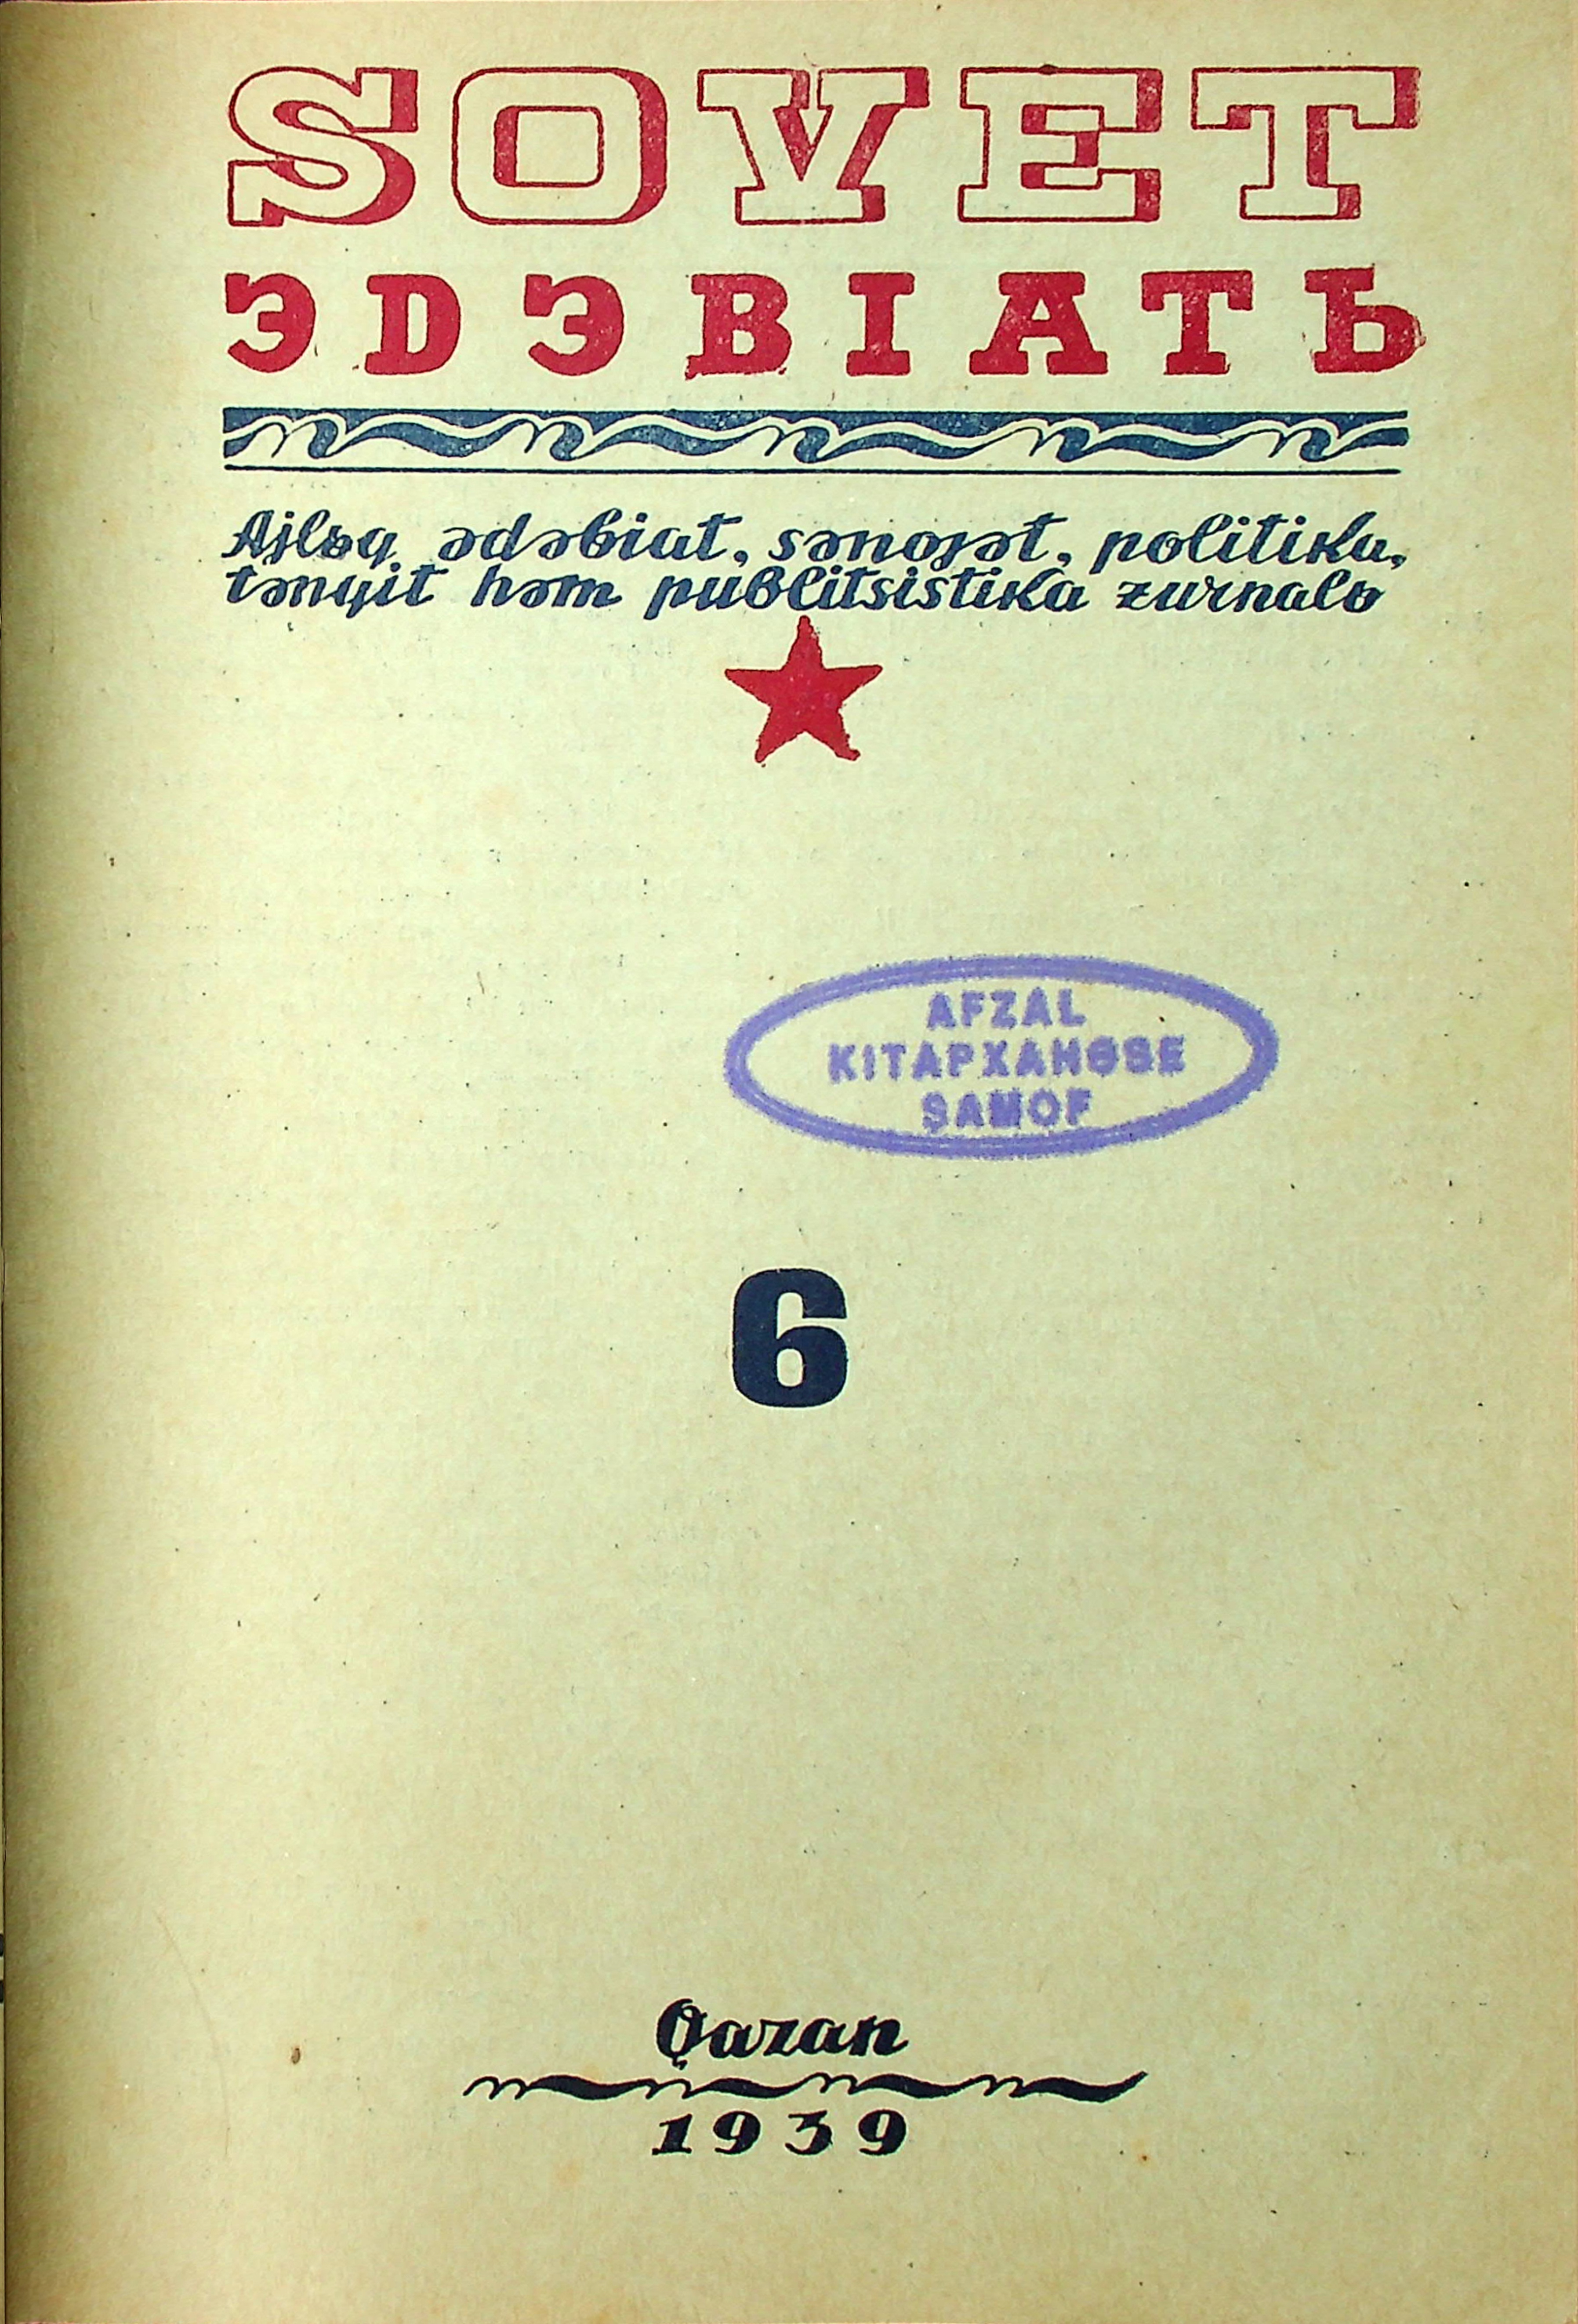 Фото журнала 1939 года. Выпуск номер 6